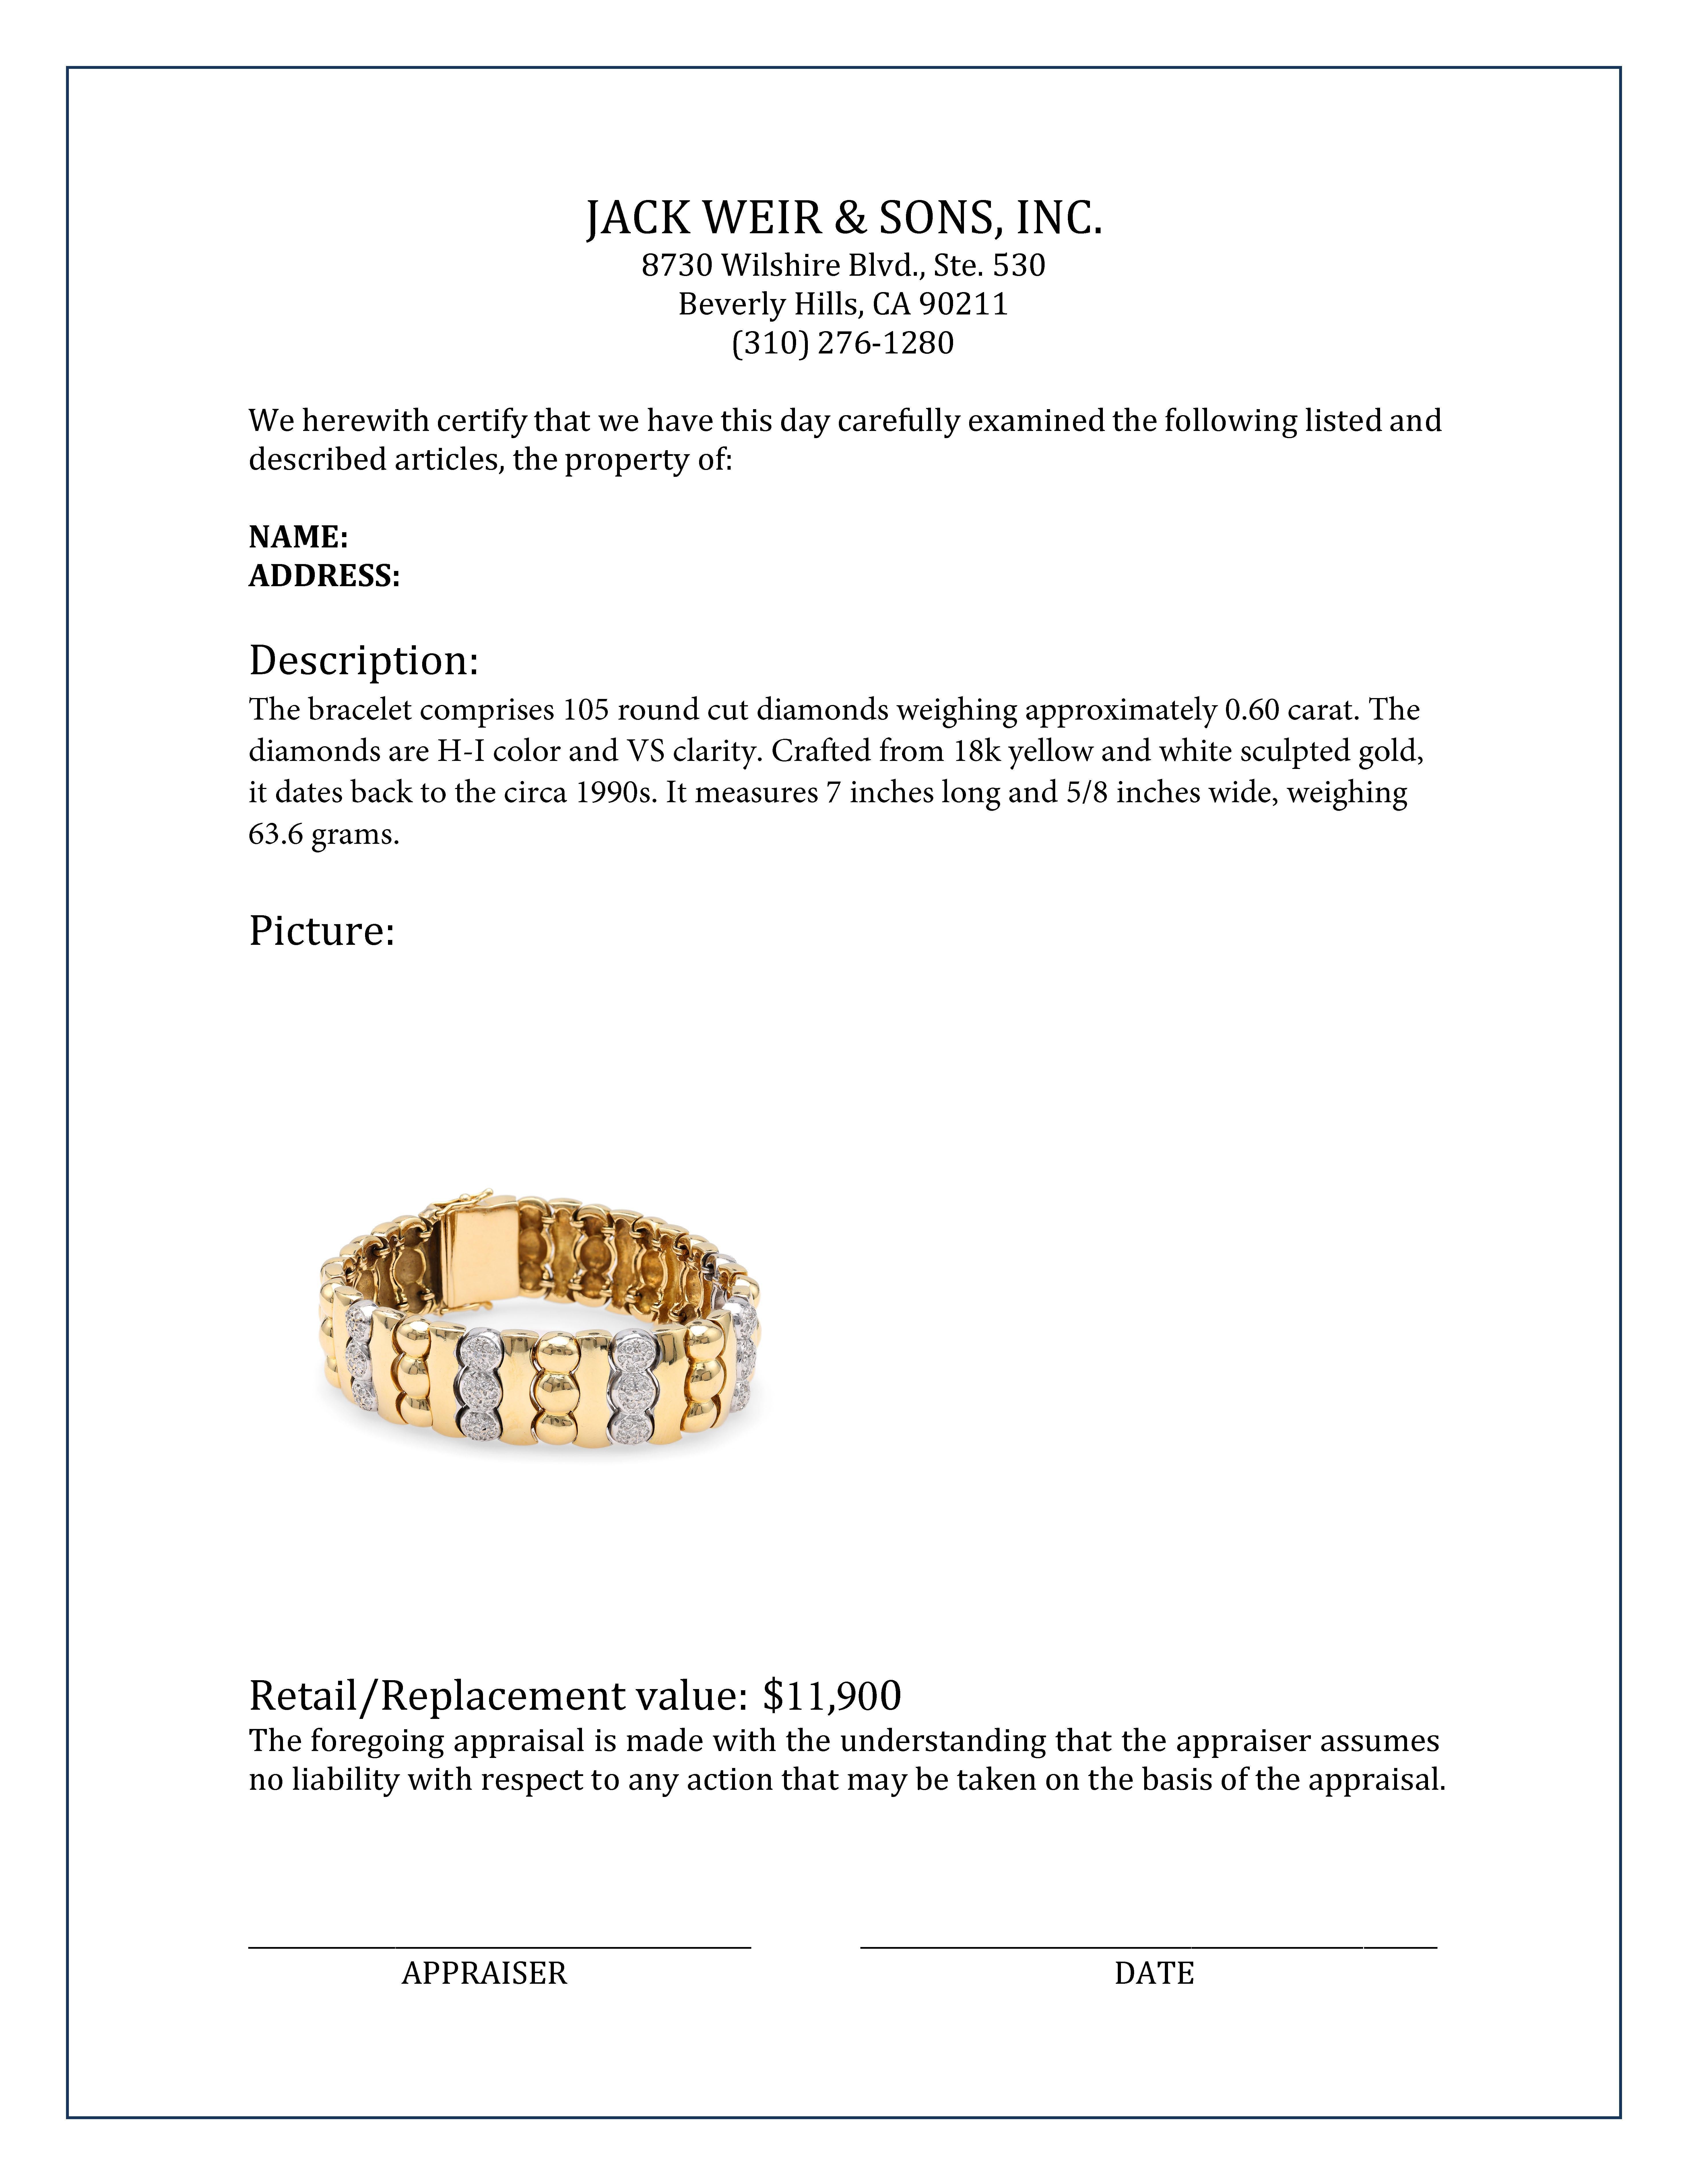 Women's or Men's Diamond Gold Bracelet For Sale